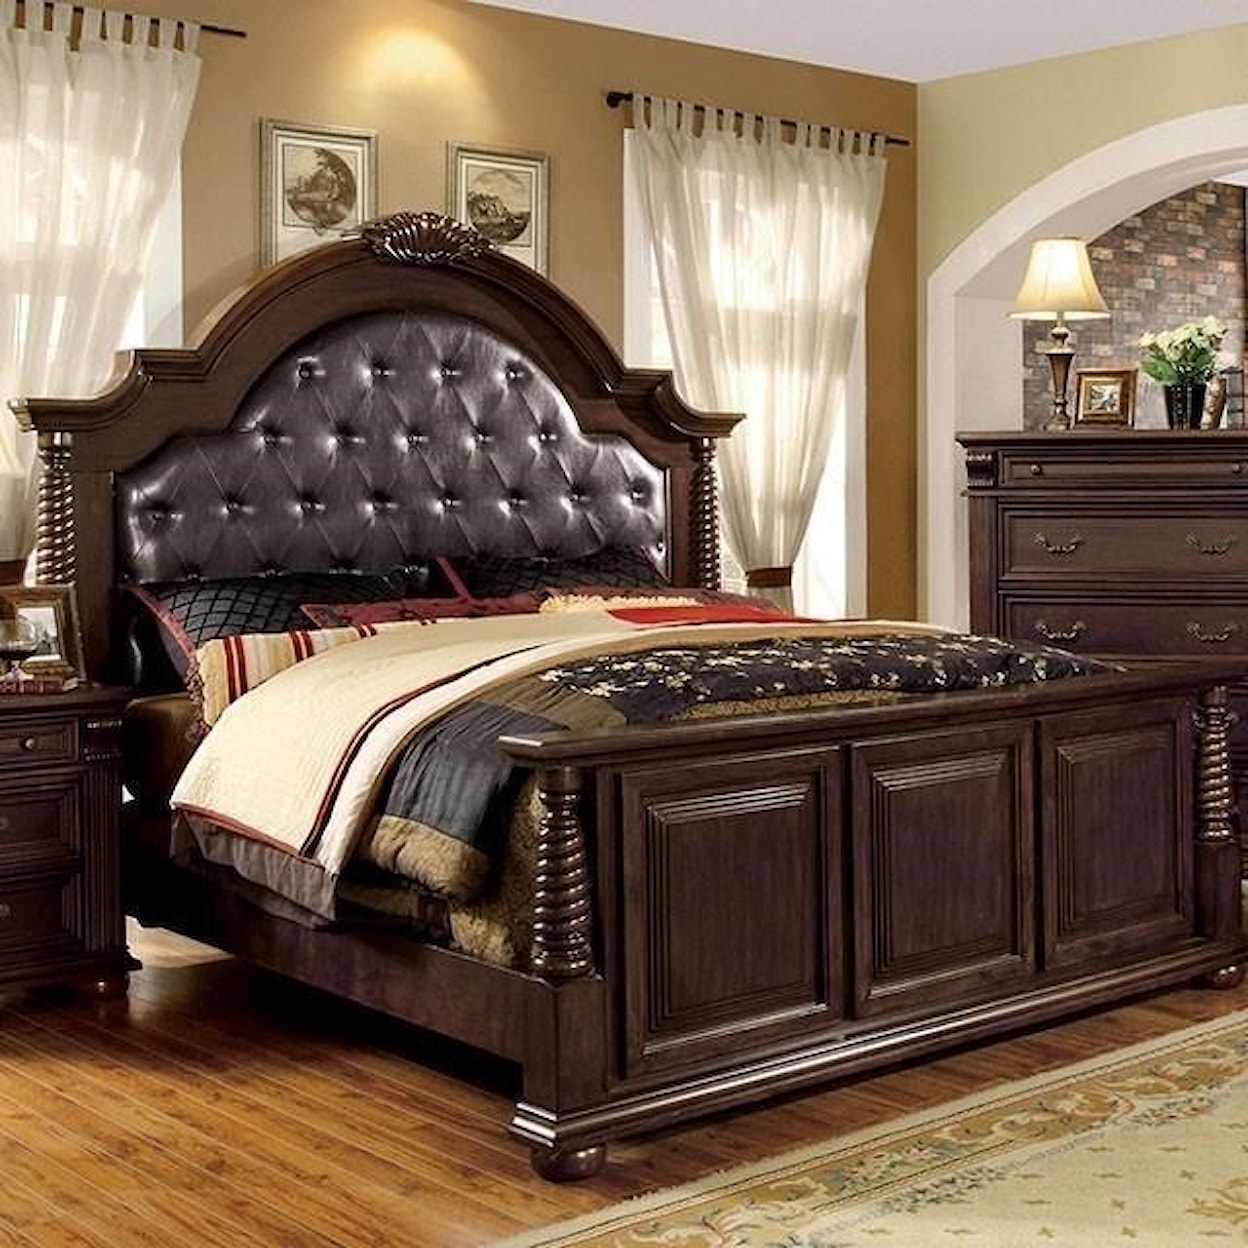 Furniture of America Esperia California King Bed